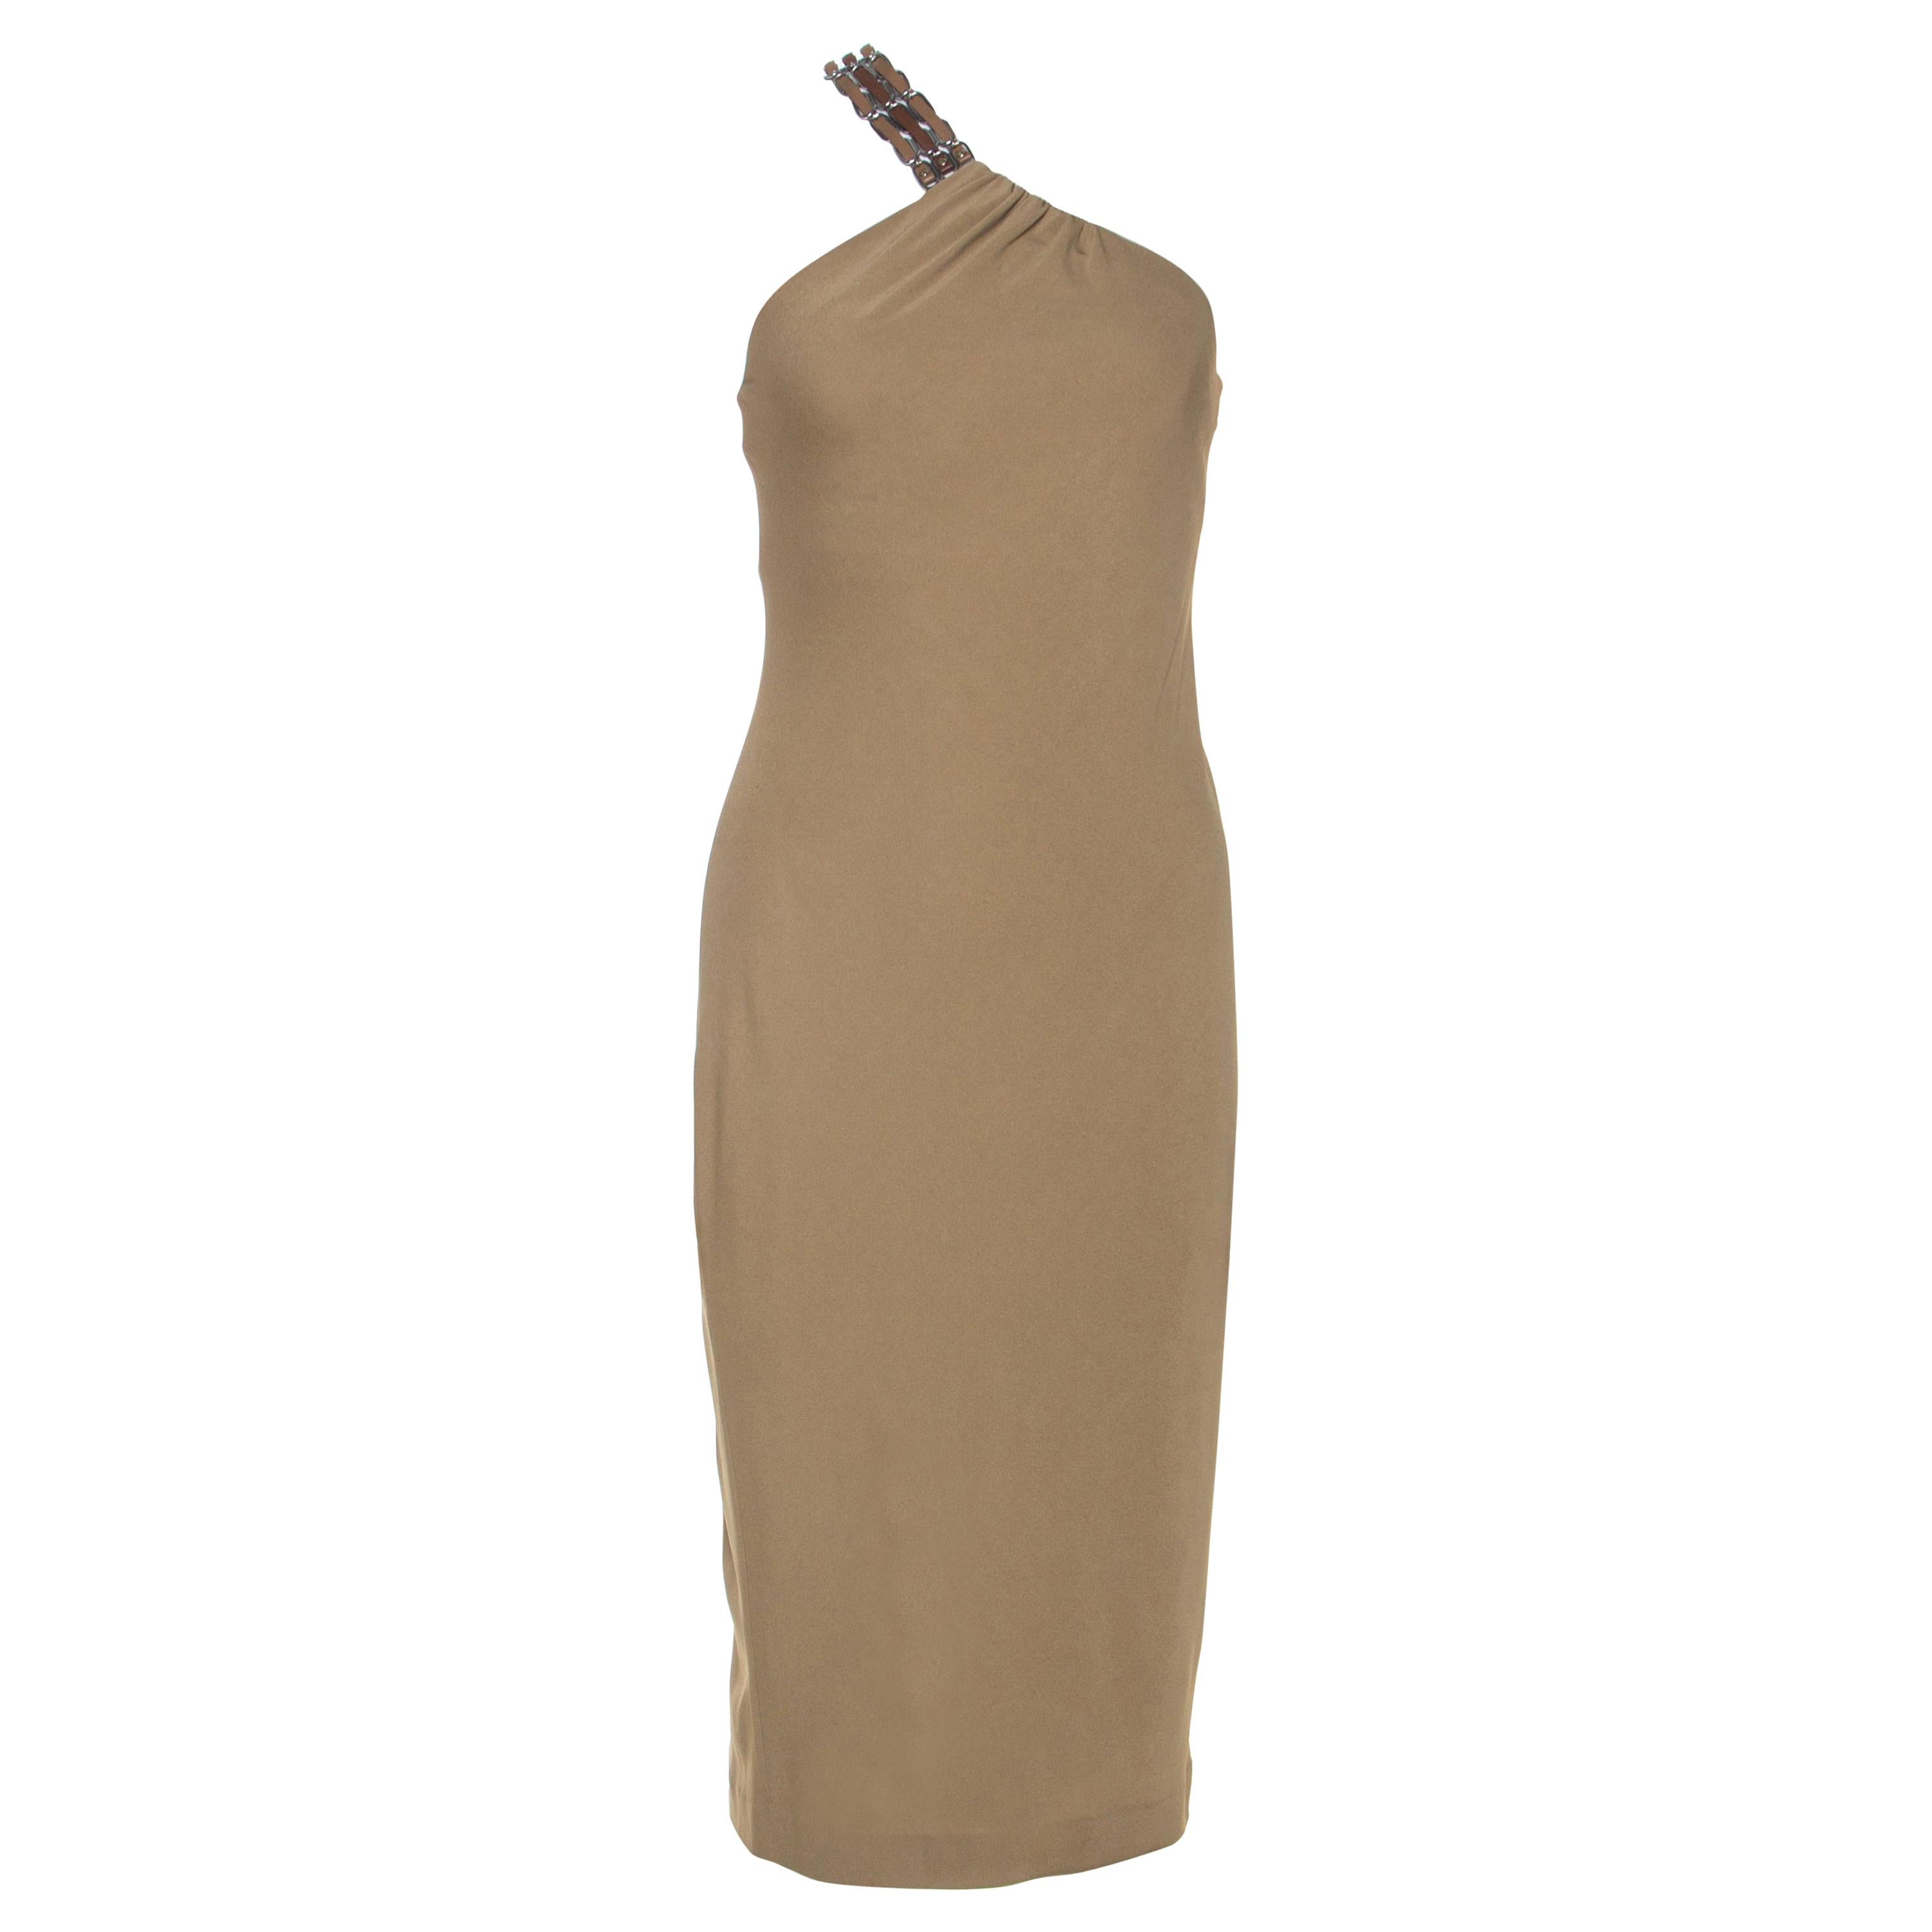 Ralph Lauren Khaki Dress - For Sale on 1stDibs